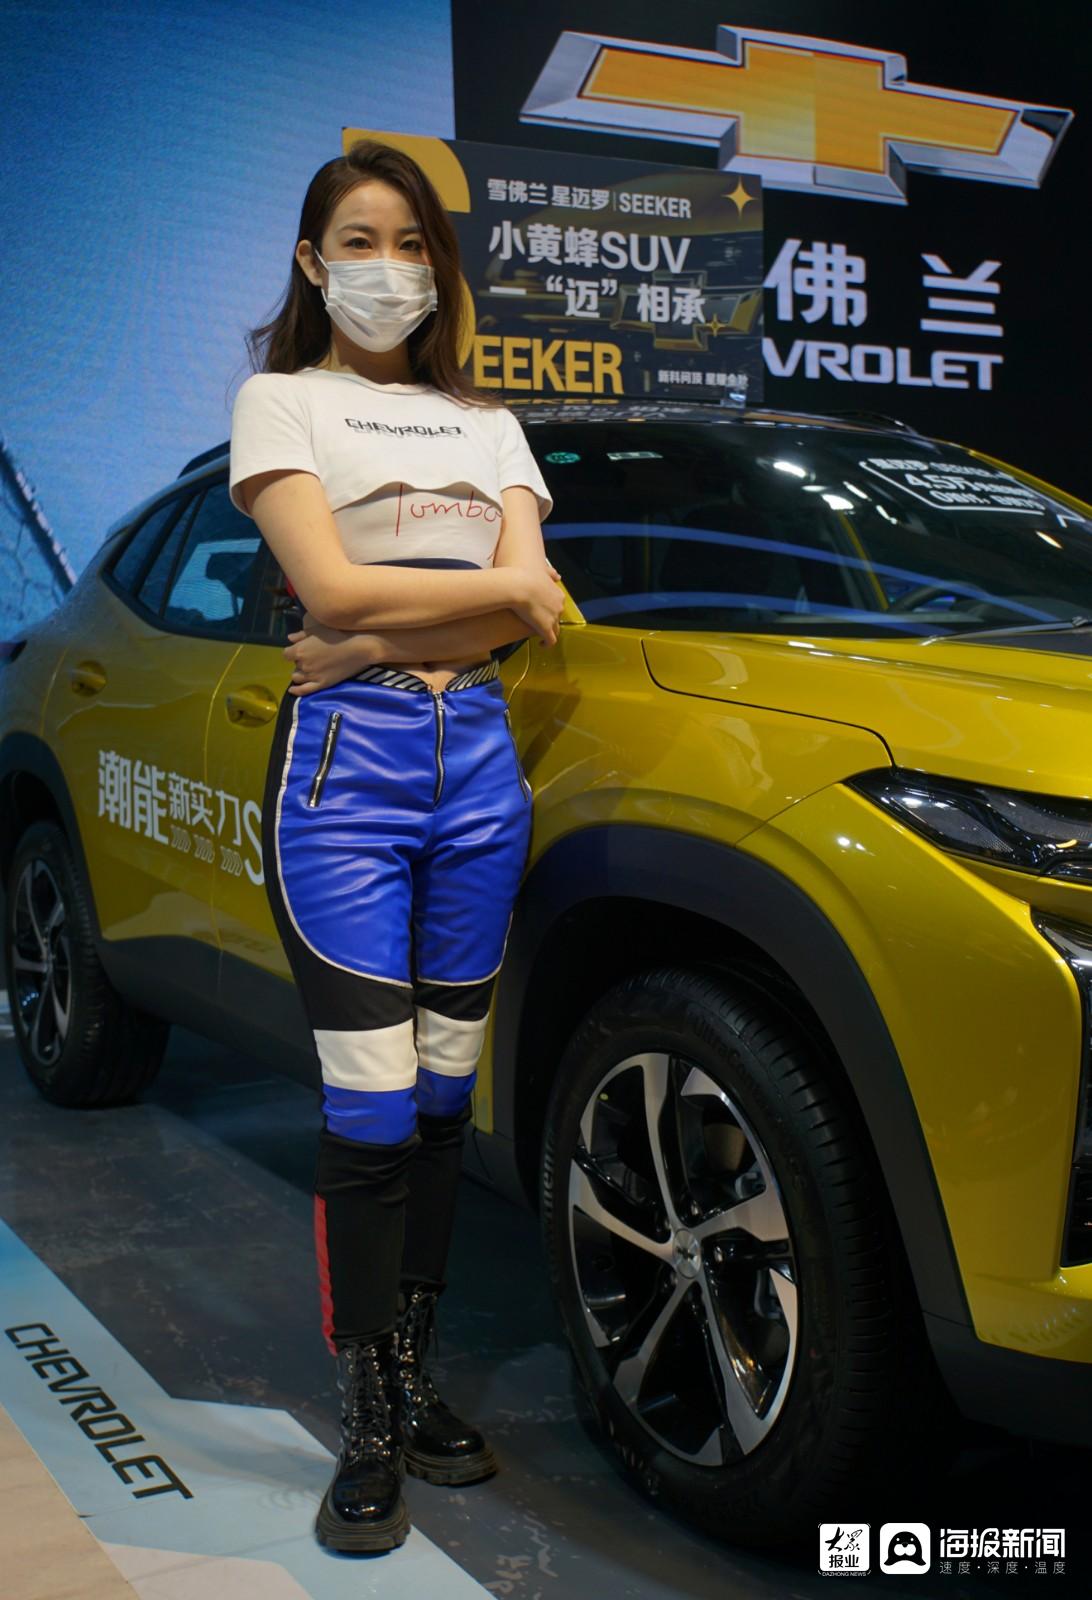 【纪实摄影】2022(秋季)齐鲁国际车展—模特风采观赏 